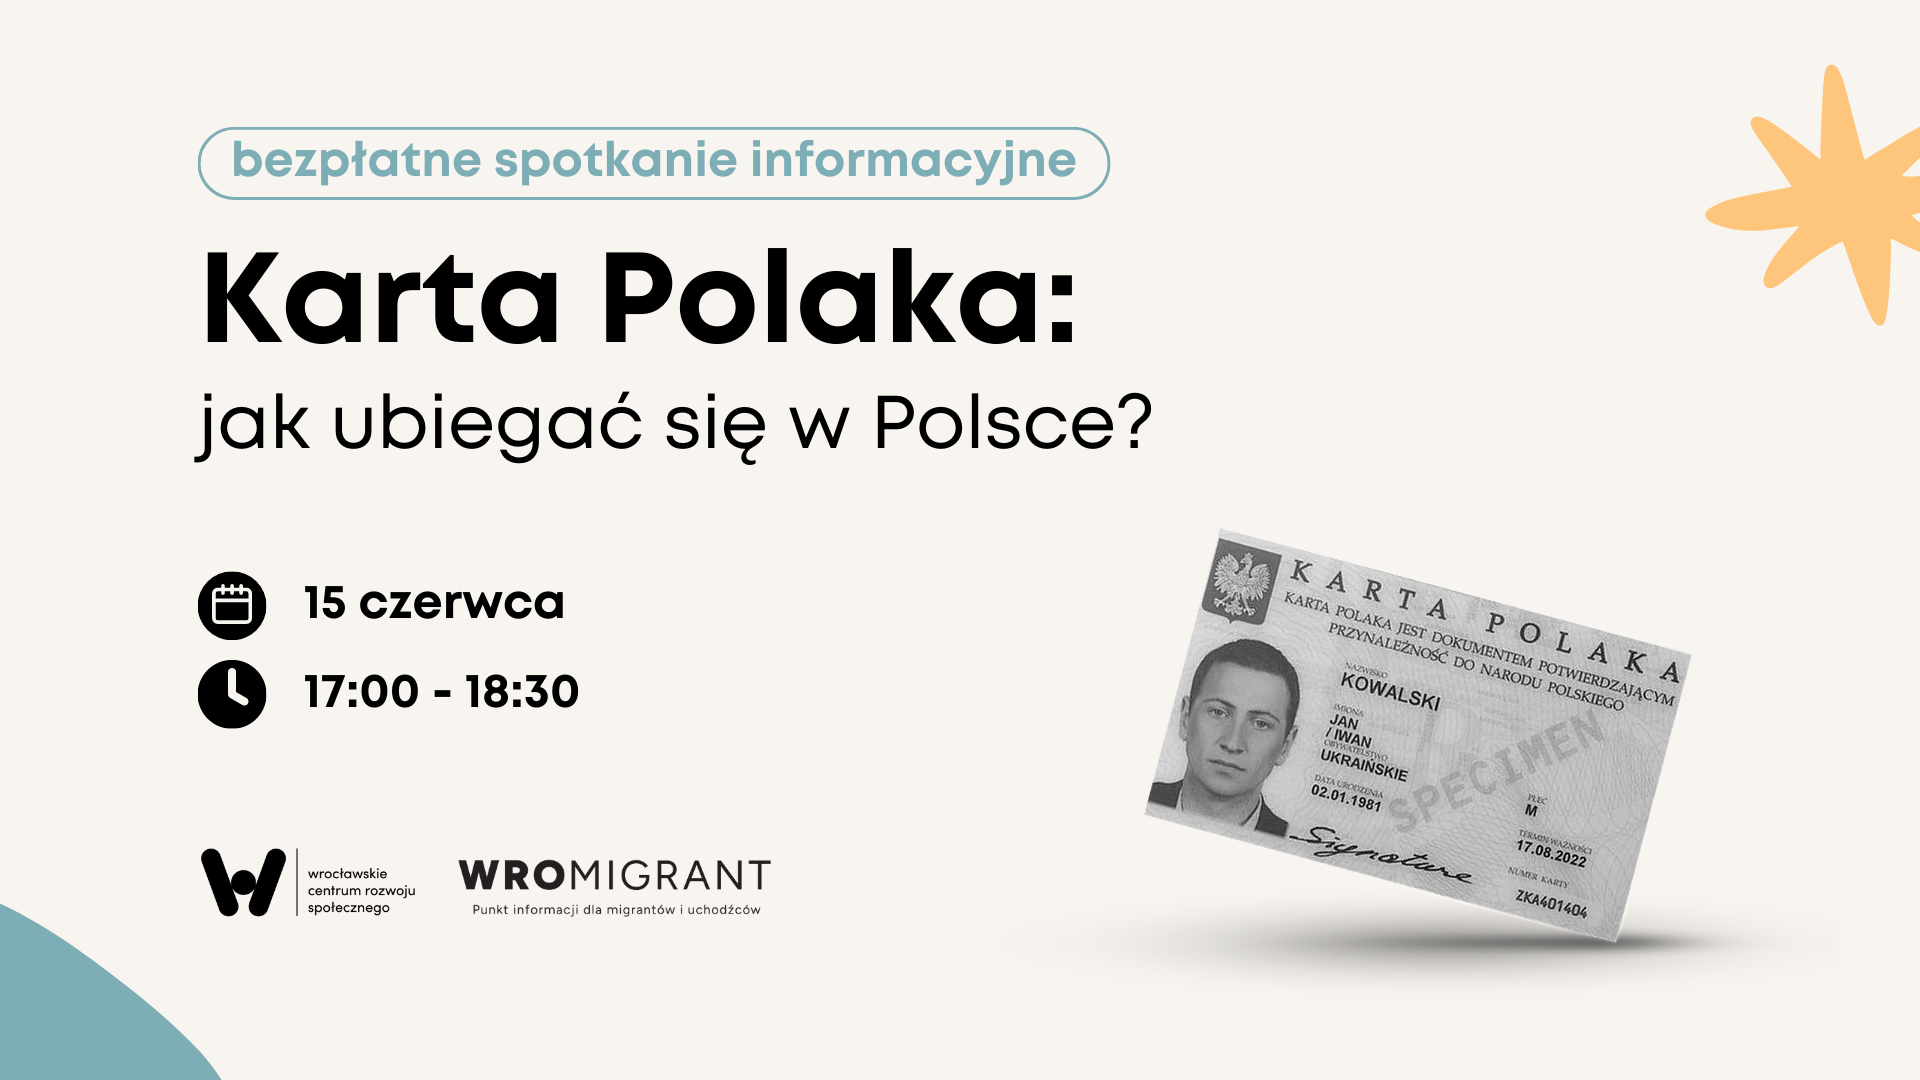 karta polaka: jak ubiegac sie w polsce 15 czerwca 17:00 18:30